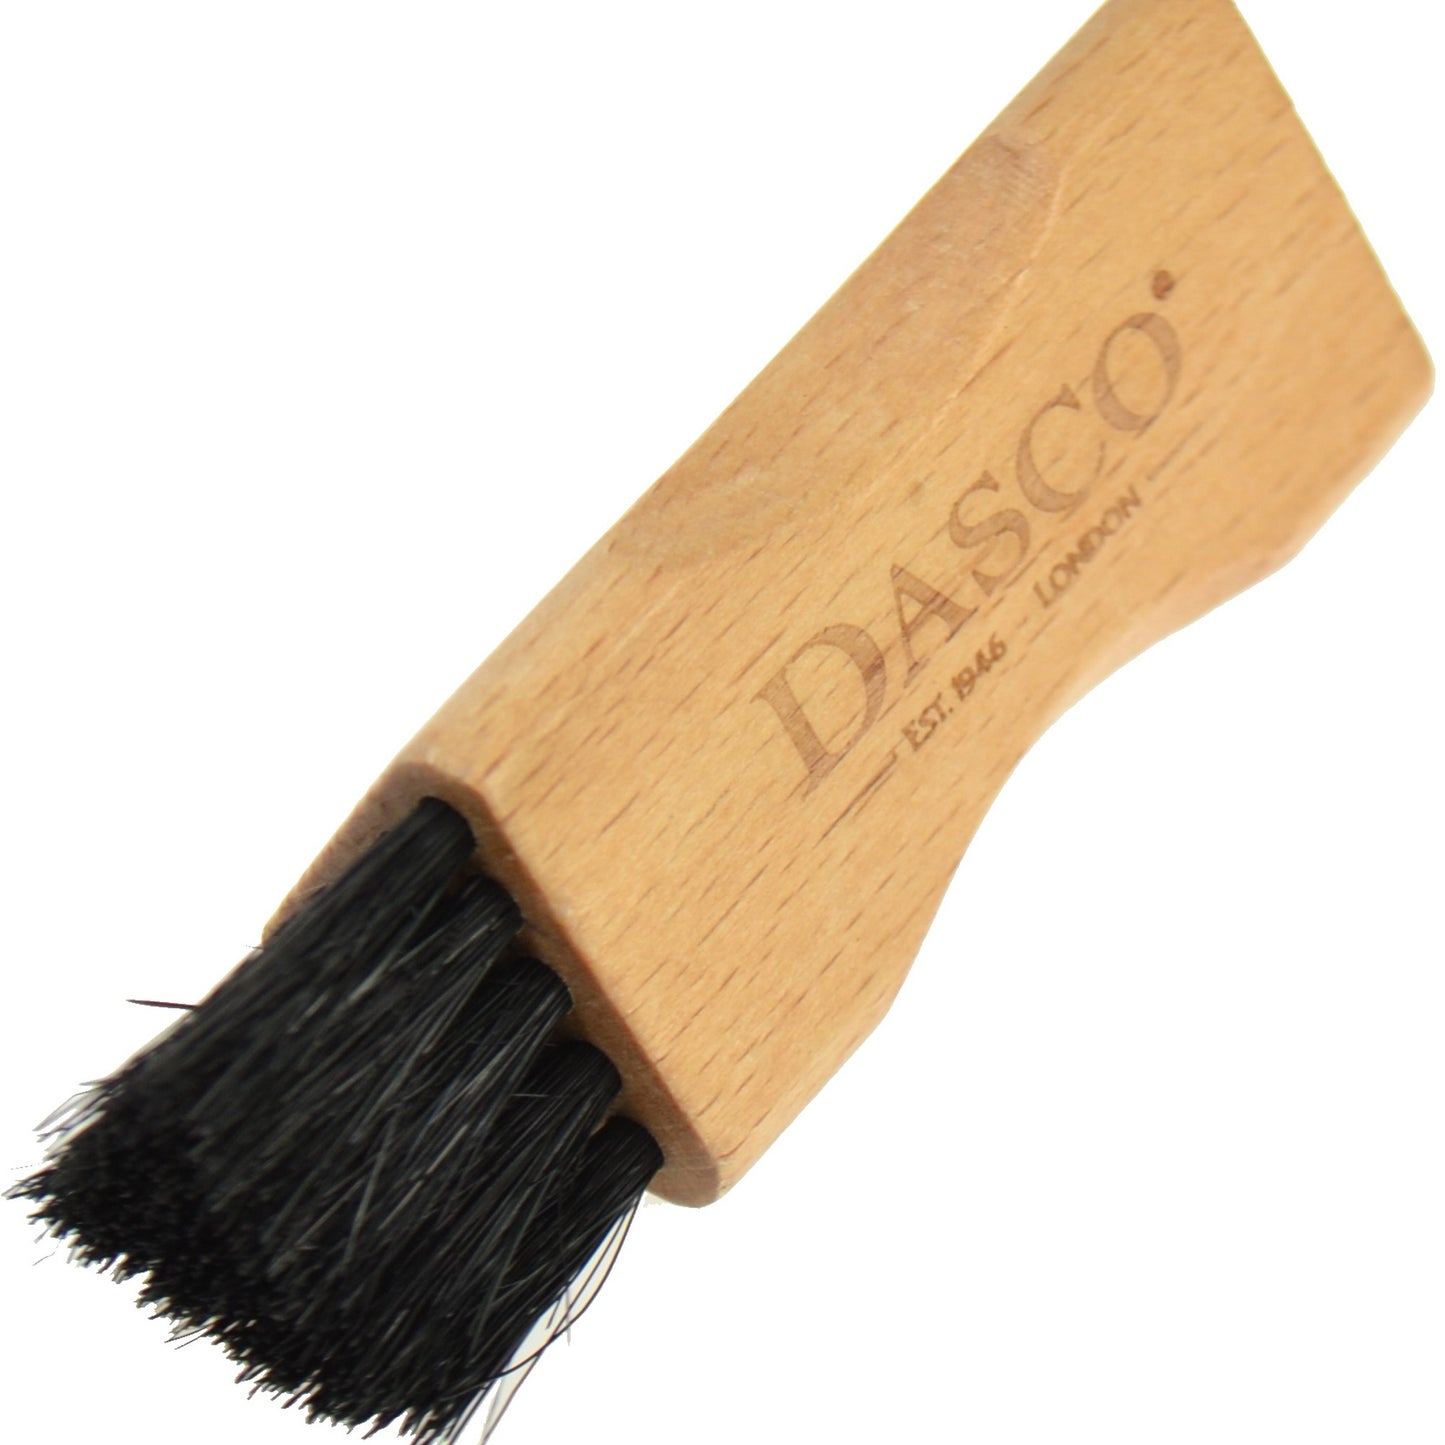 Dasco Triangular Hardwood BristlePolish Applicator Brush